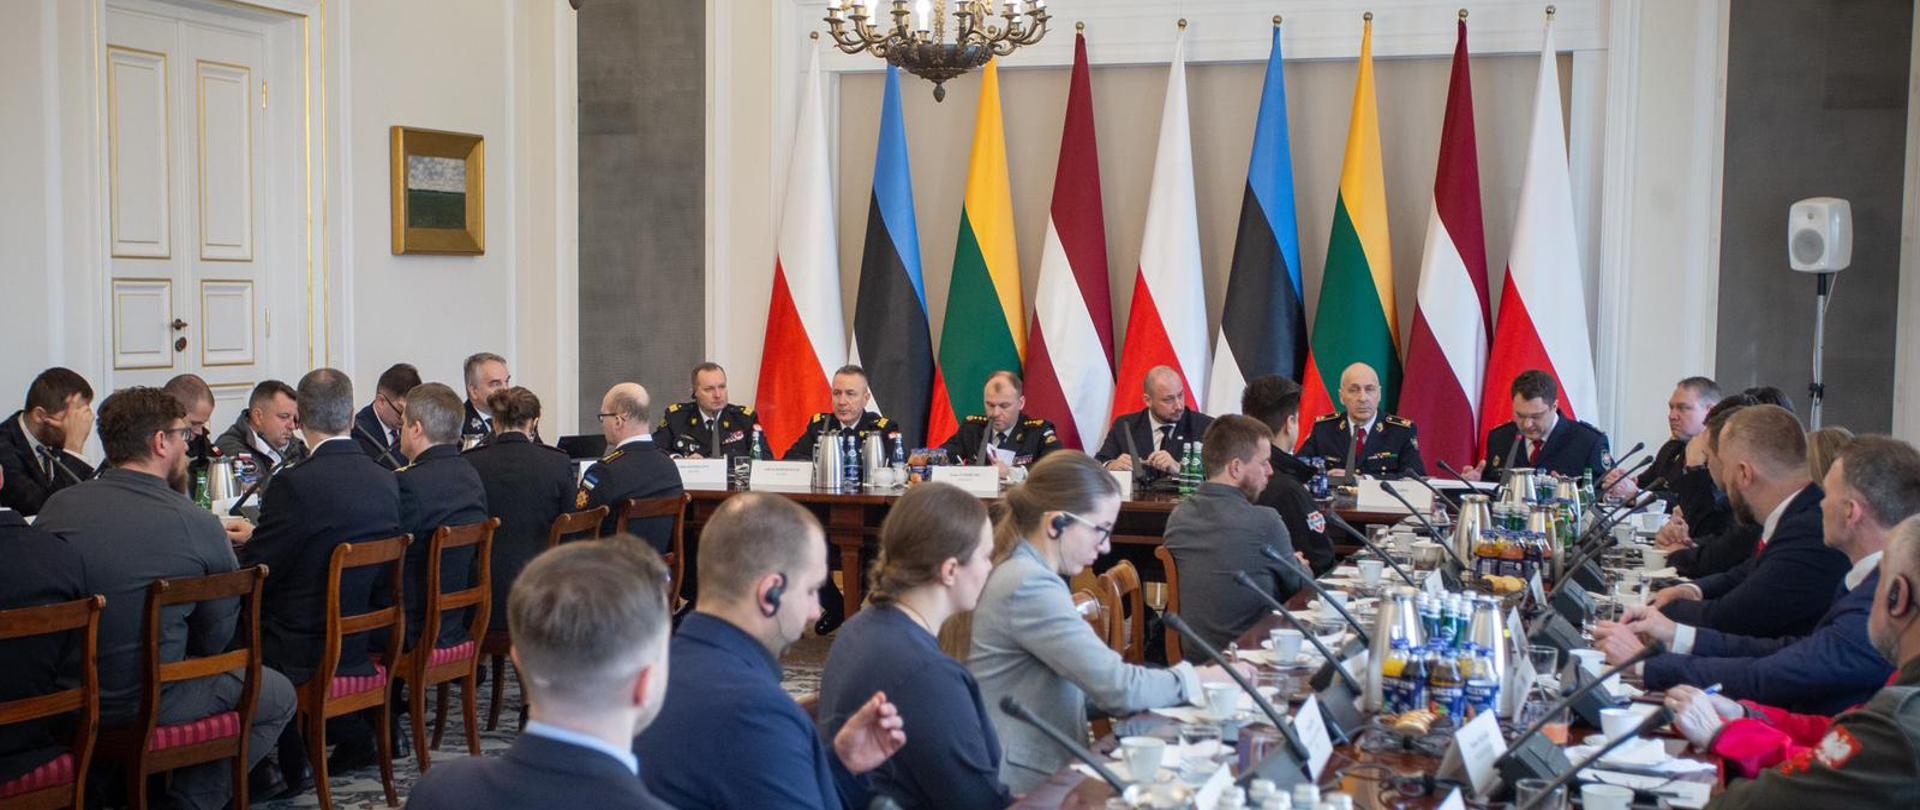 Przy stołach podczas konferencji siedzą jej uczestnicy, za frontowym stołem stoją flagi Polski, Estonii, Litwy, Łotwy